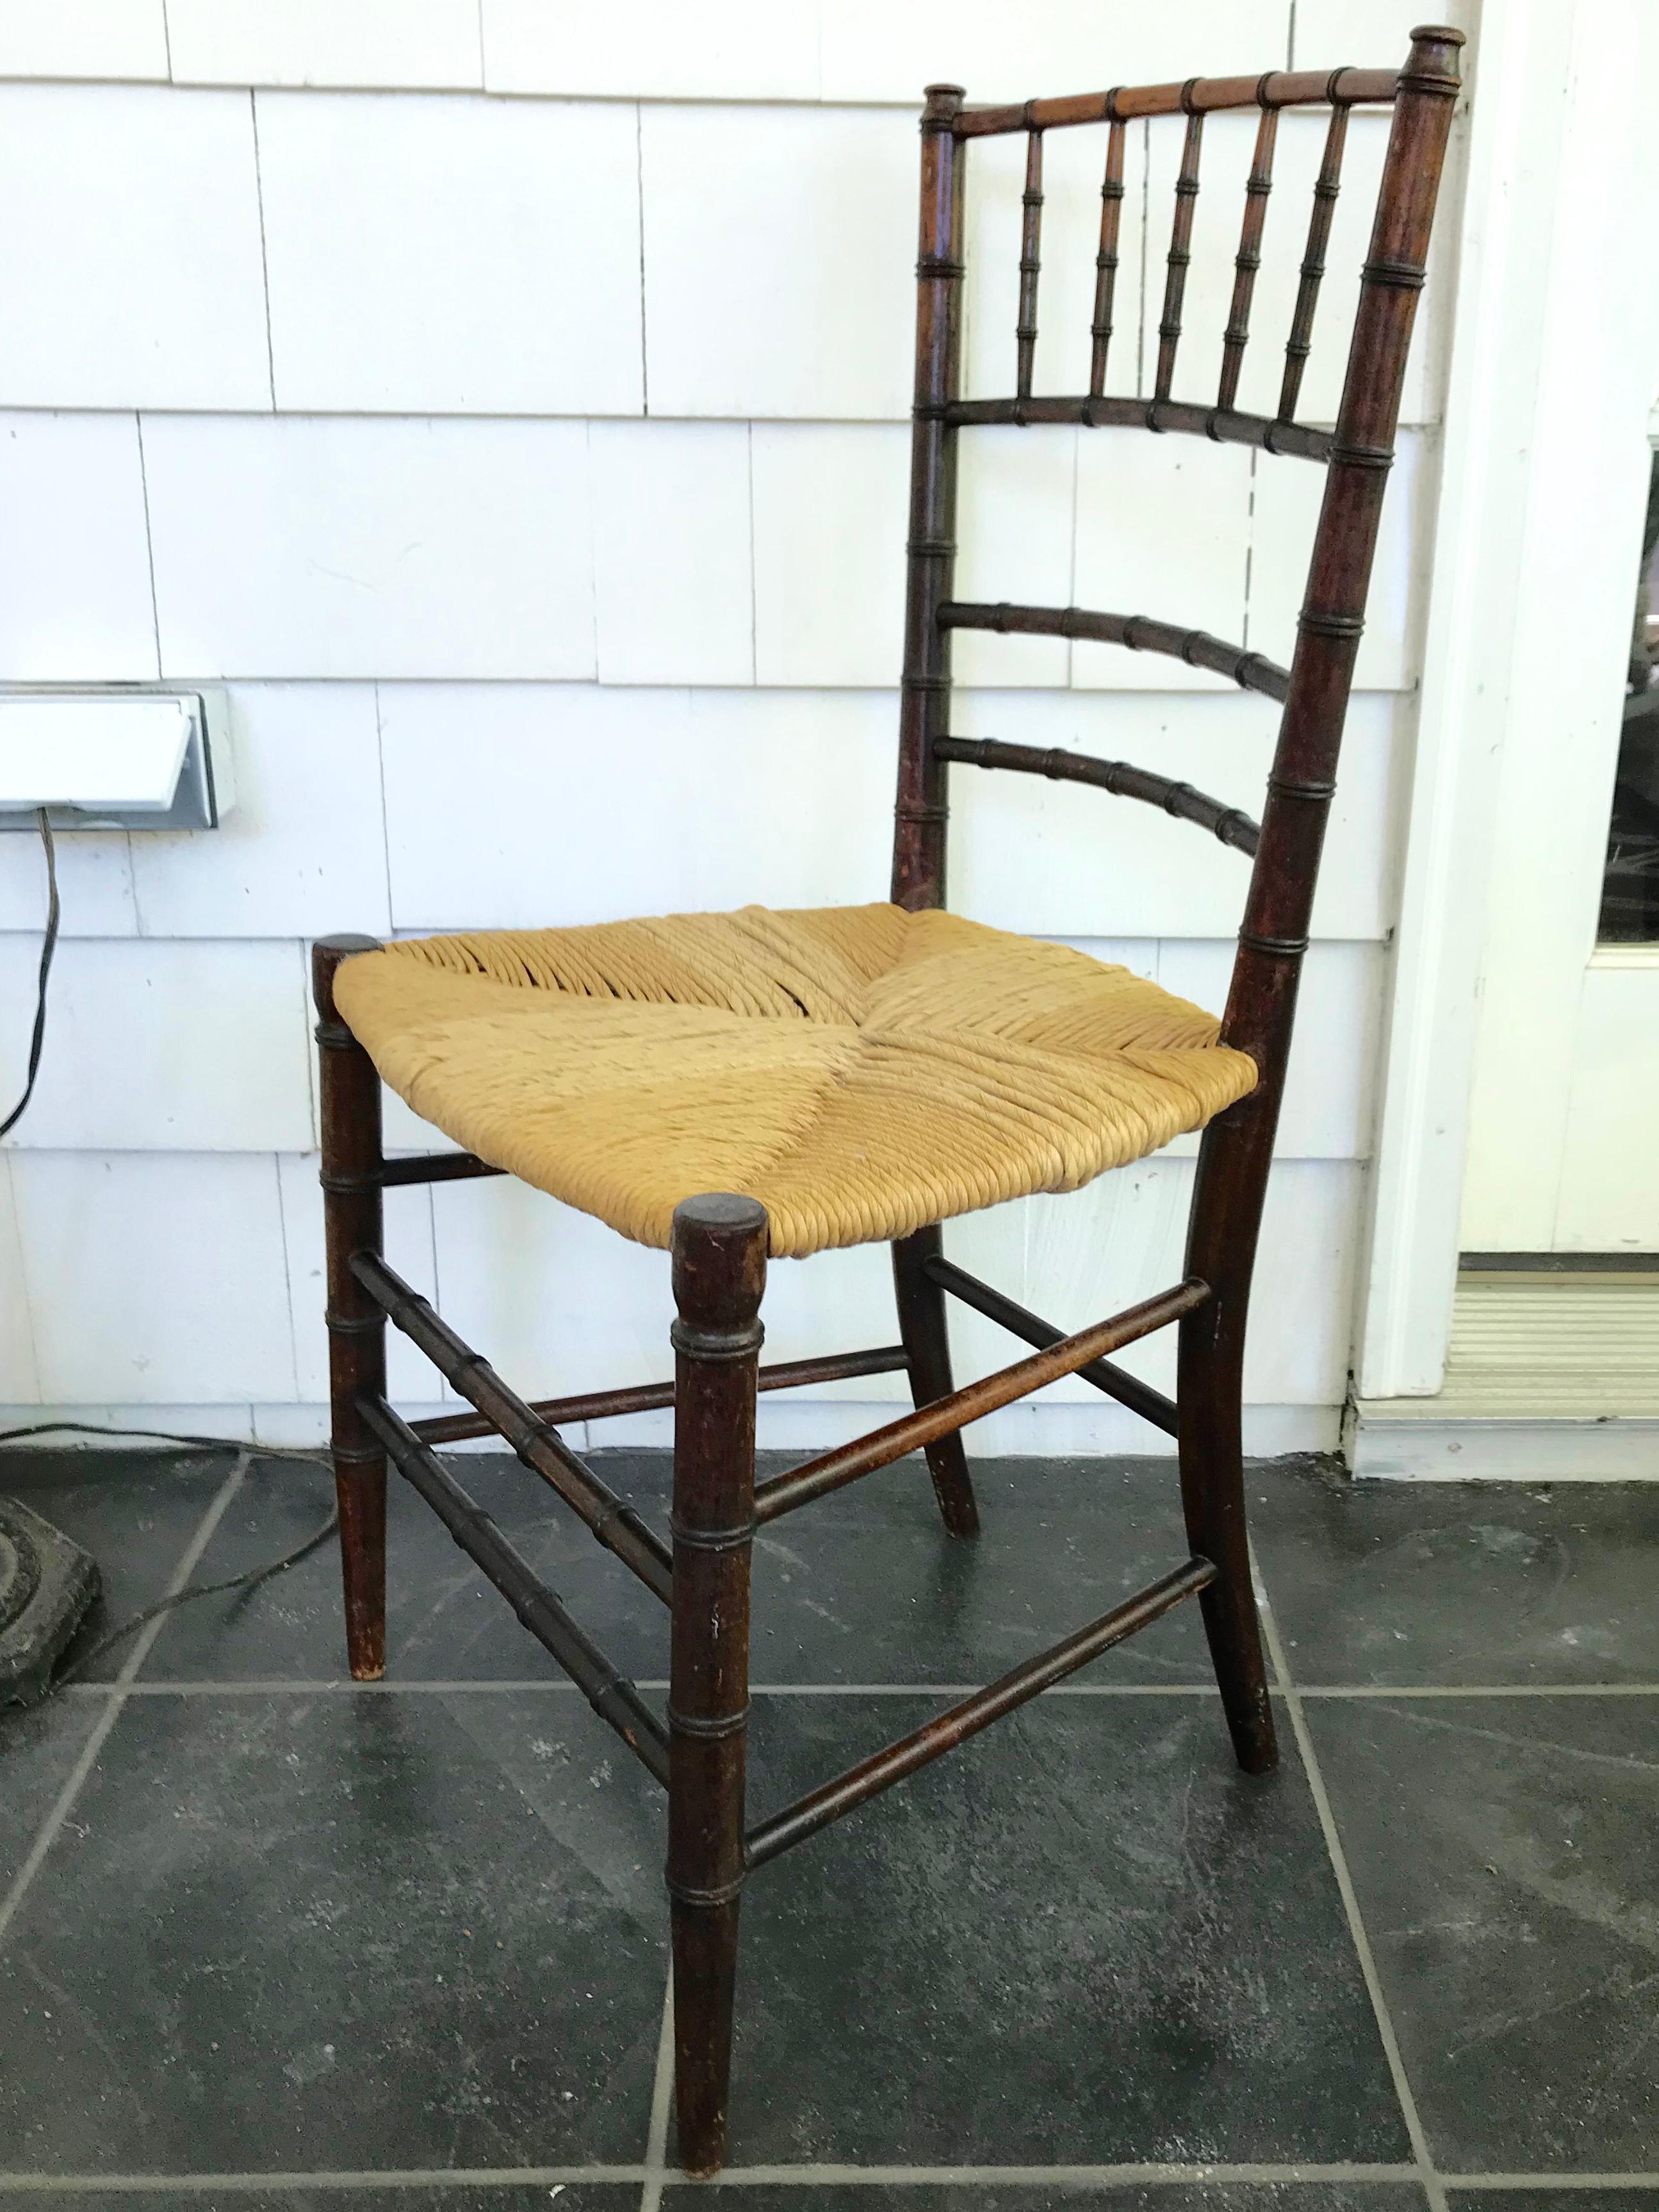 Chaise d'appoint anglaise en faux bambou. Chaise d'appoint/chaise d'enfant en bois tourné foncé sculpté pour ressembler à du bambou foncé avec assise en jonc, Angleterre, fin du XIXe siècle.
Dimensions : 31